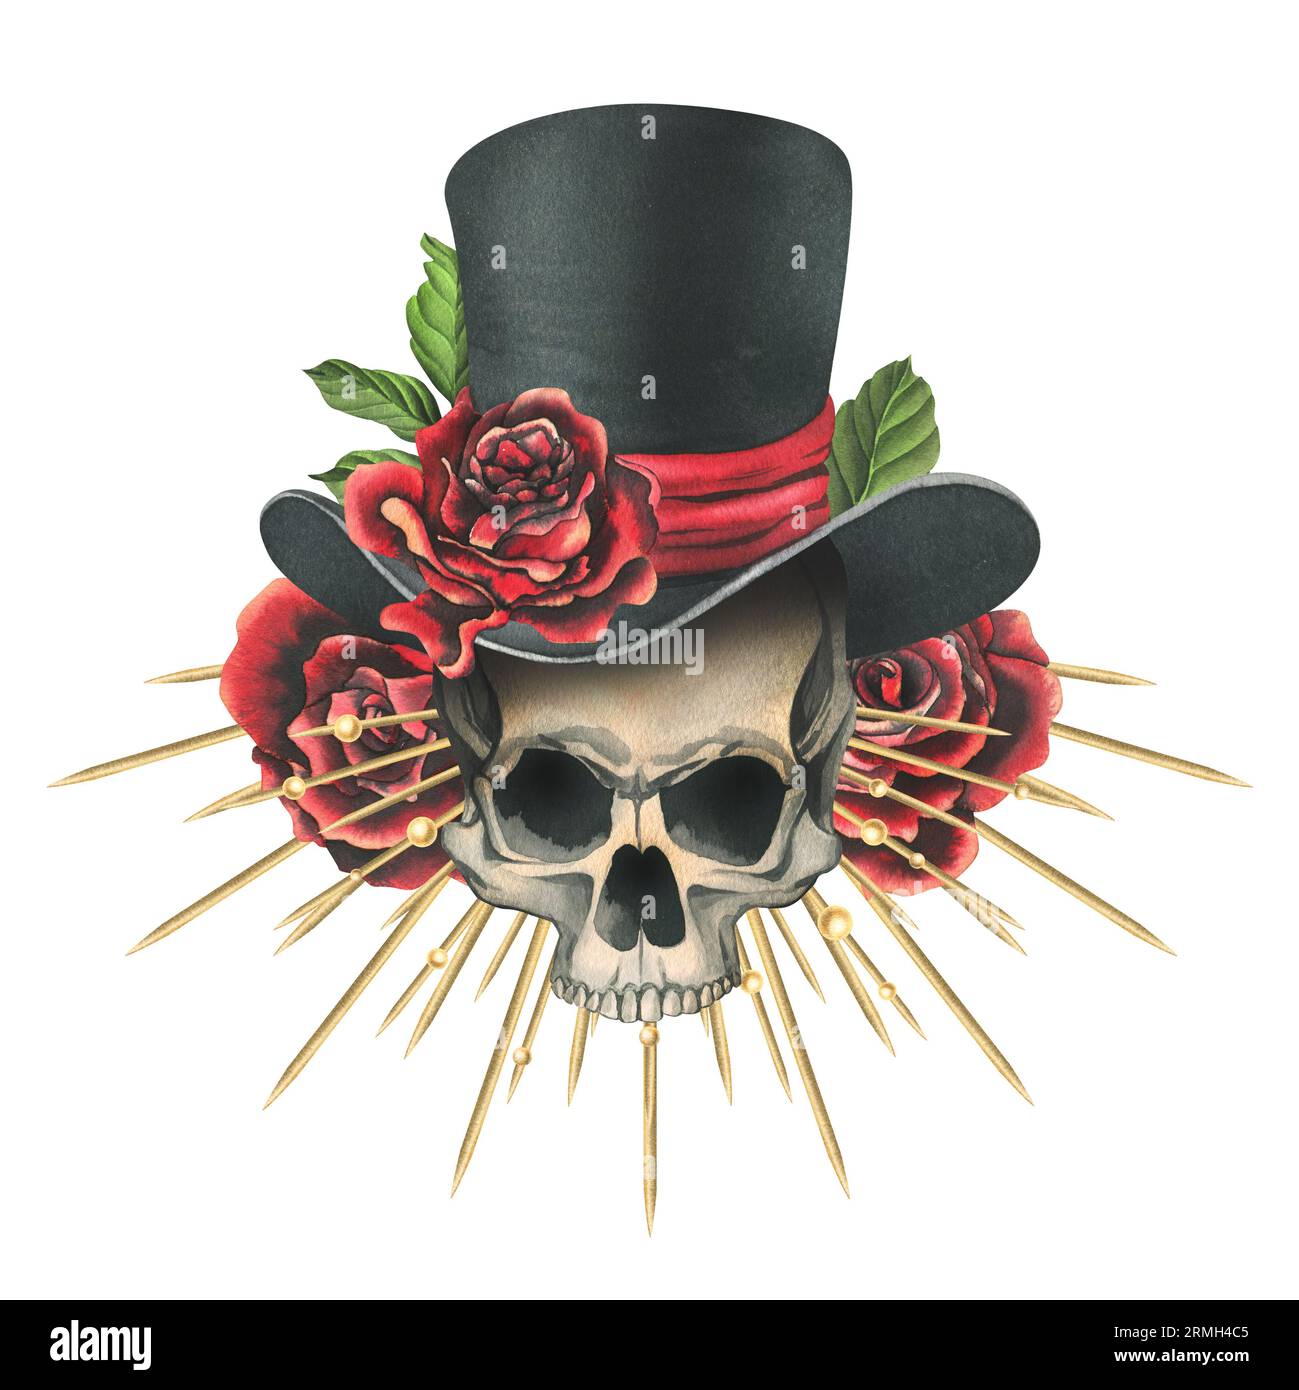 Crâne humain dans un chapeau haut de gamme avec des roses rouges, une couronne dorée avec des rayons. Illustration aquarelle dessinée à la main pour le jour des morts, halloween, Dia de los Banque D'Images